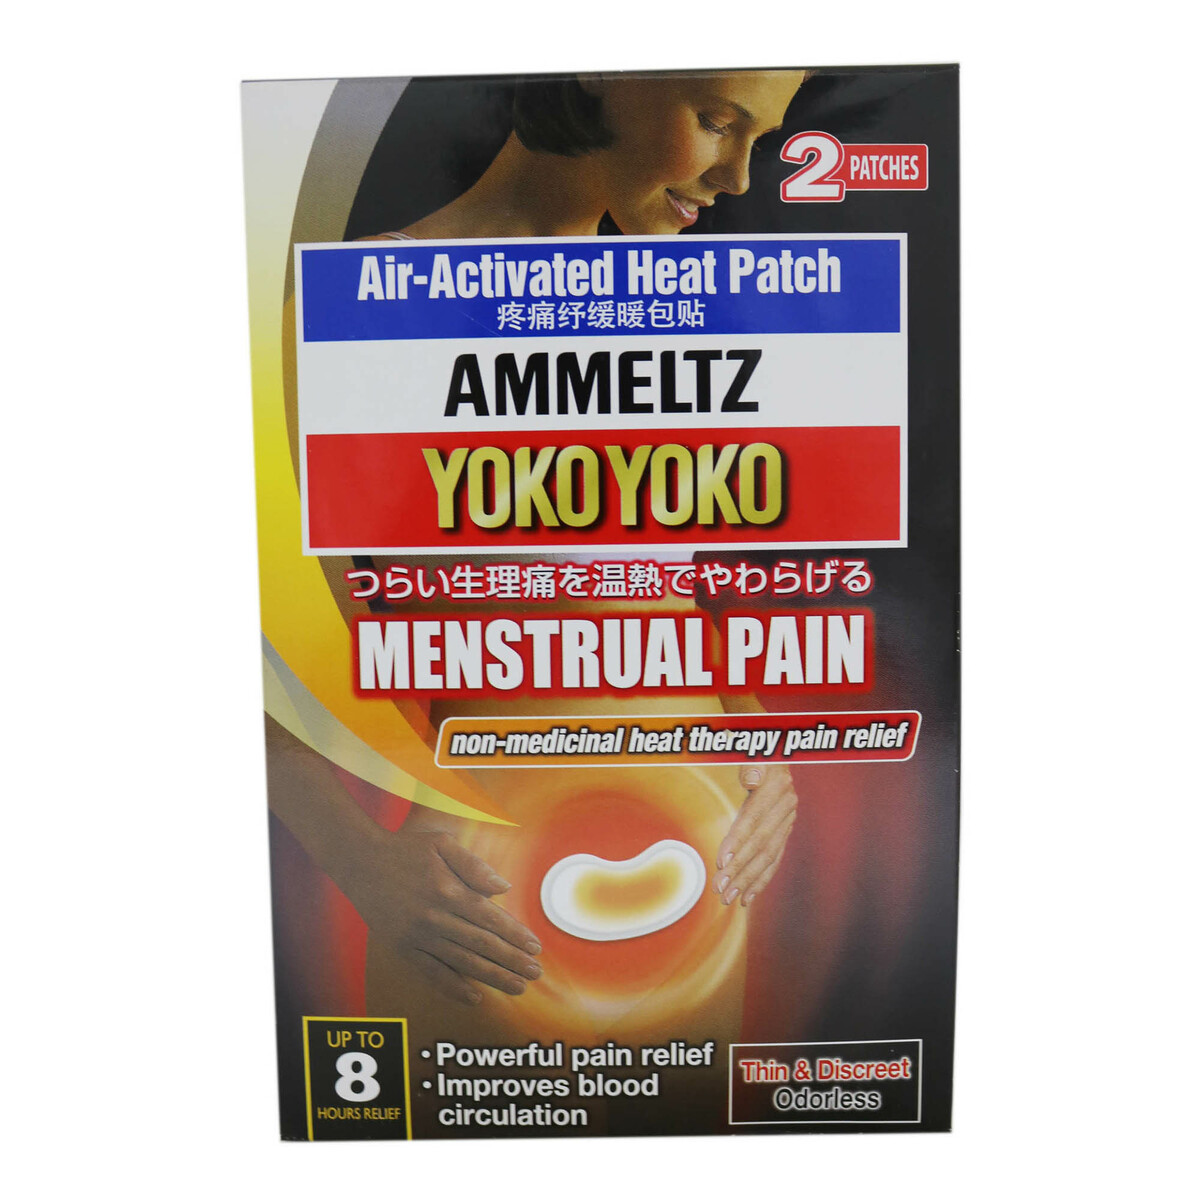 Ammeltz Menstrual Pain Patch 2pcs